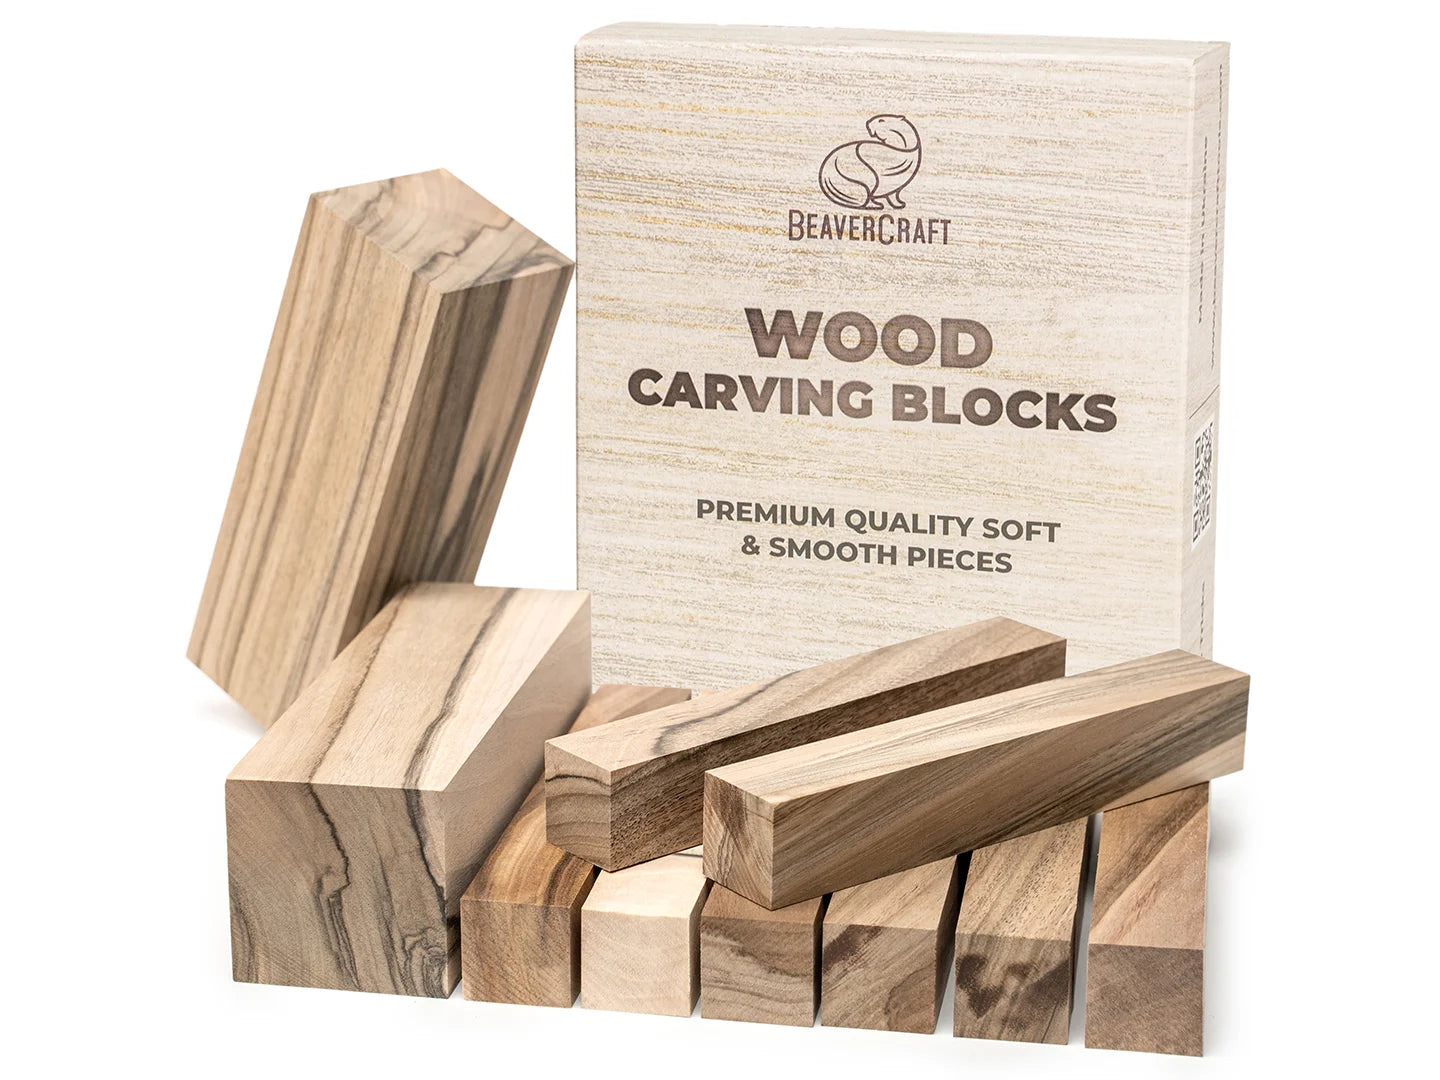 BeaverCraft BW18 pcs Basswood Carving Blocks Whittling Wood